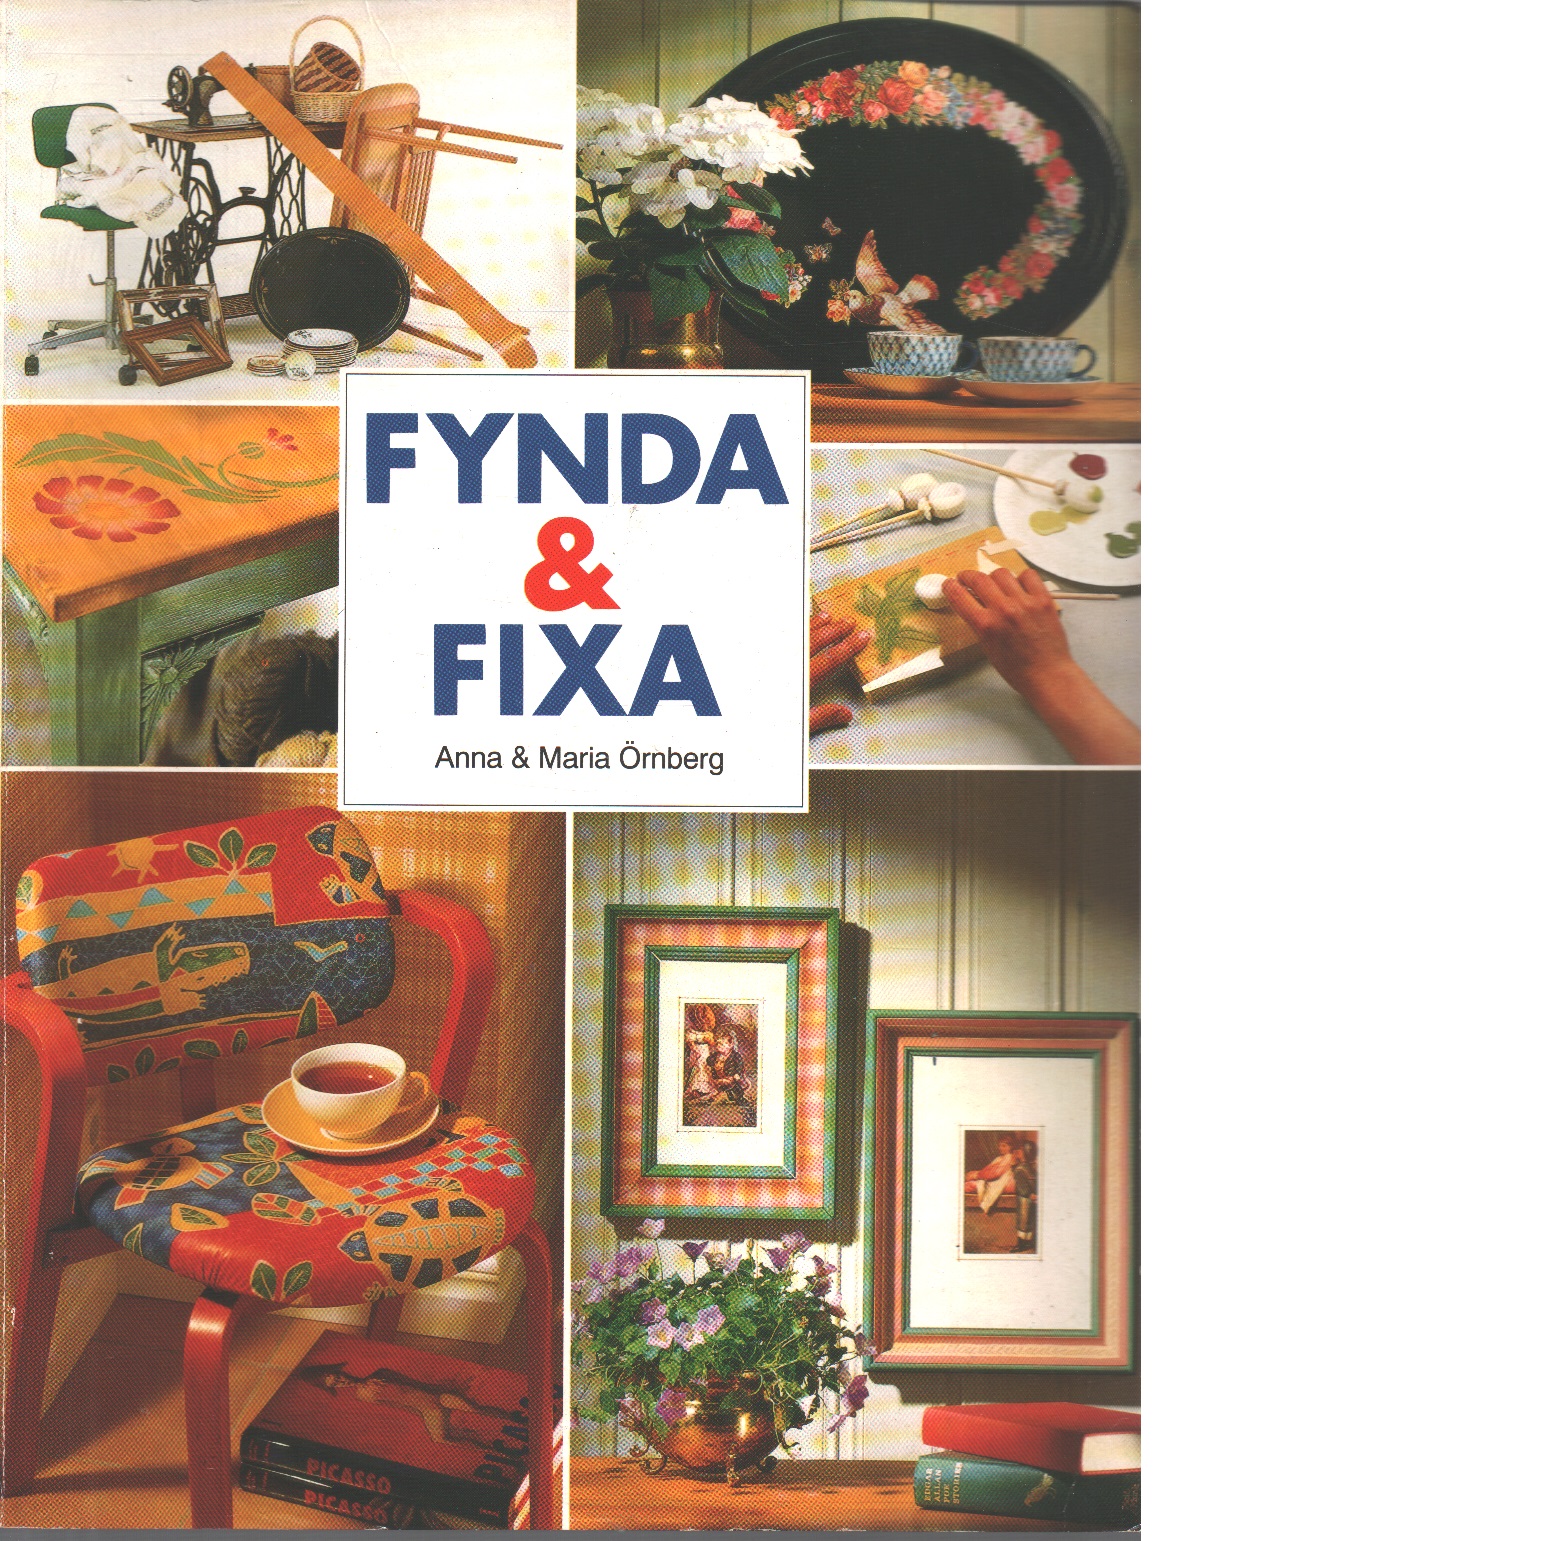 Fynda & fixa - Örnberg, Anna och Örnberg, Maria